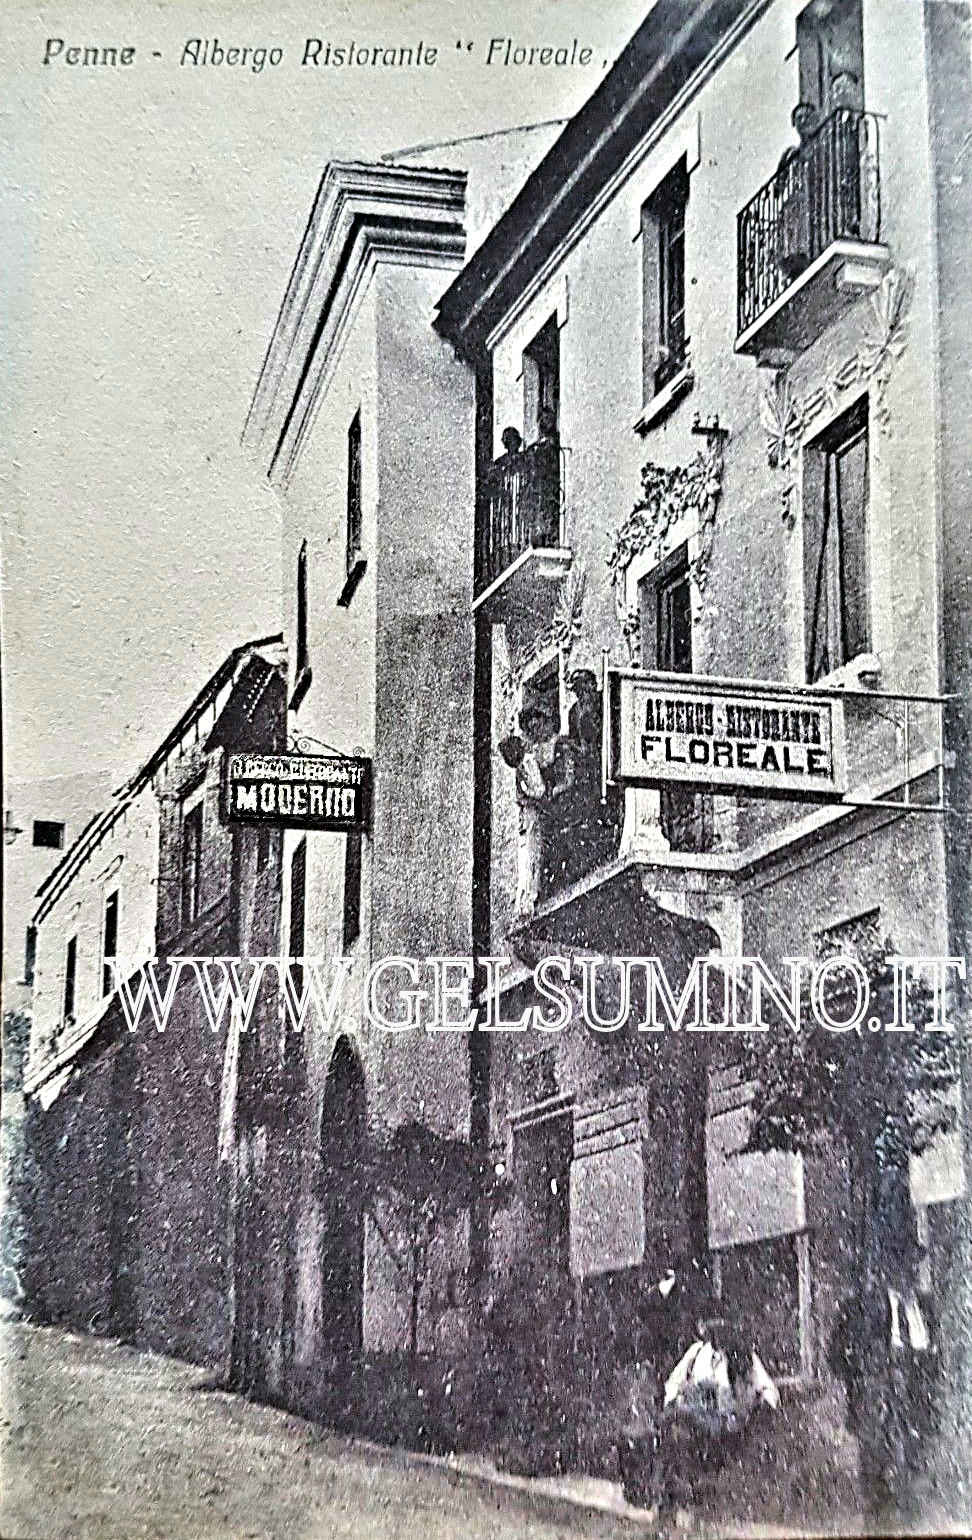 Corso dei Vestini con gli alberghi Floreale e Moderno - Cartolina viaggiata 1927